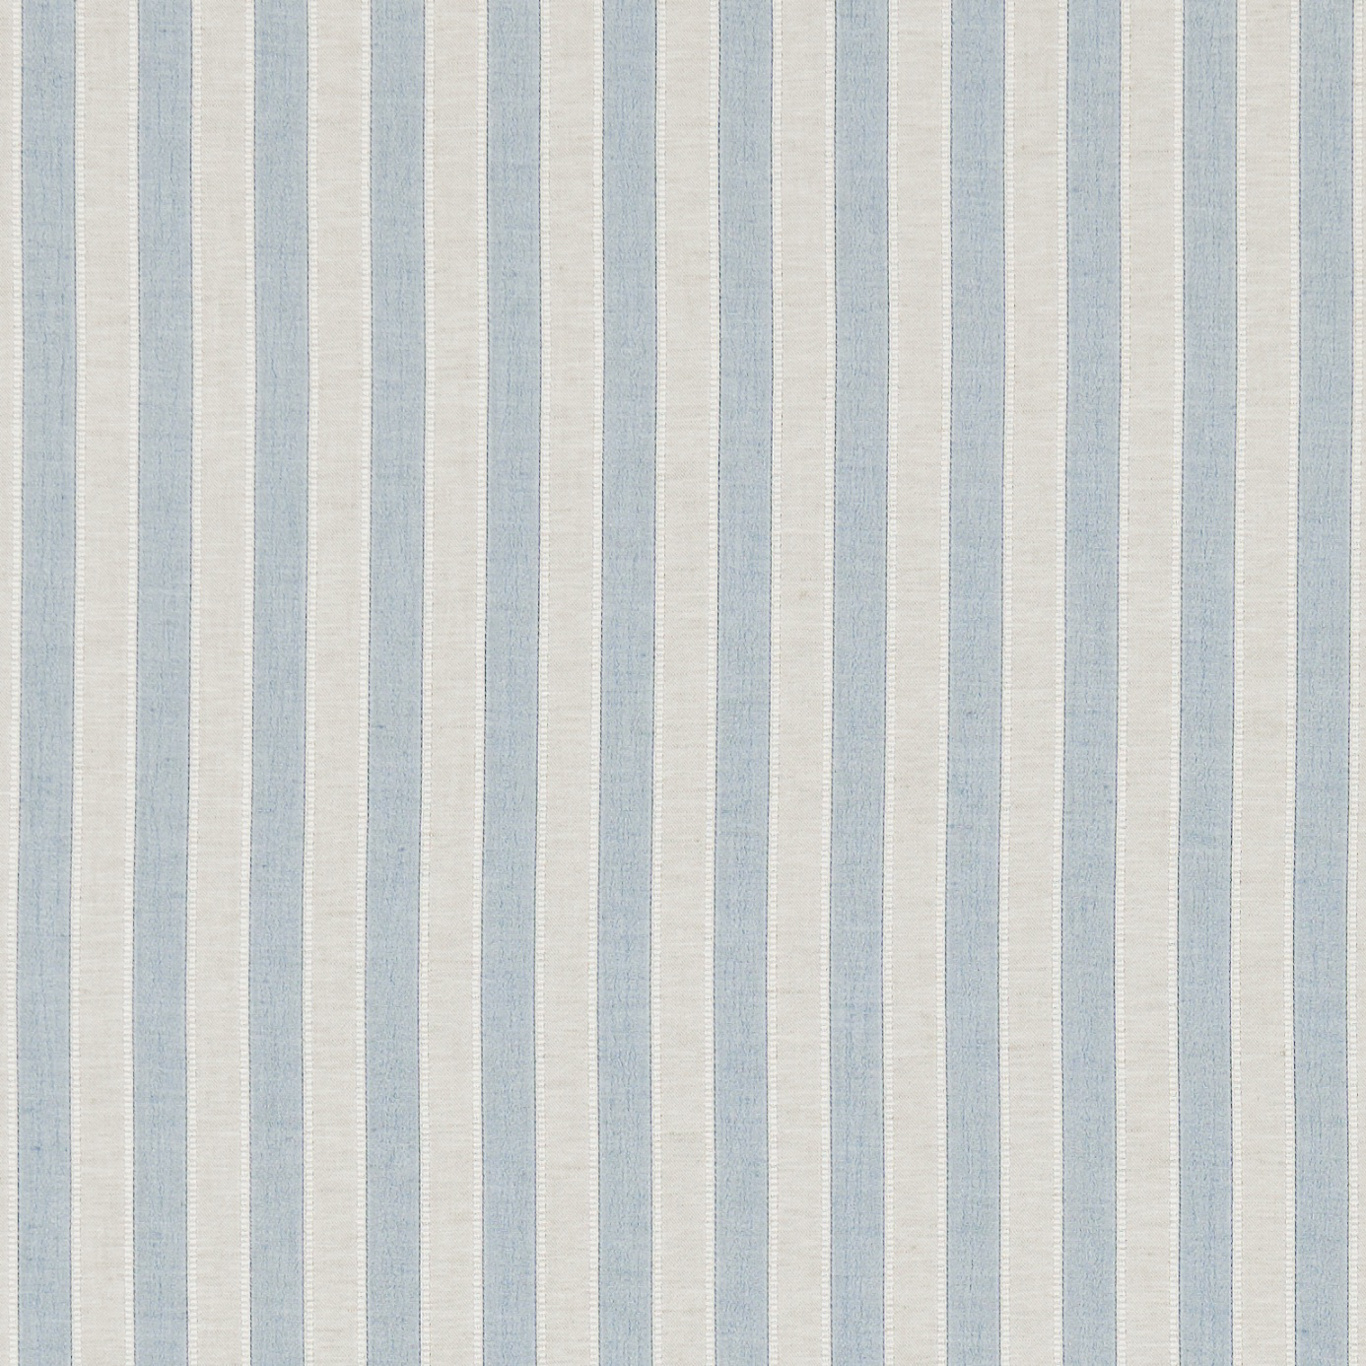 Sorilla Stripe Delft/Linen Fabric by SAN